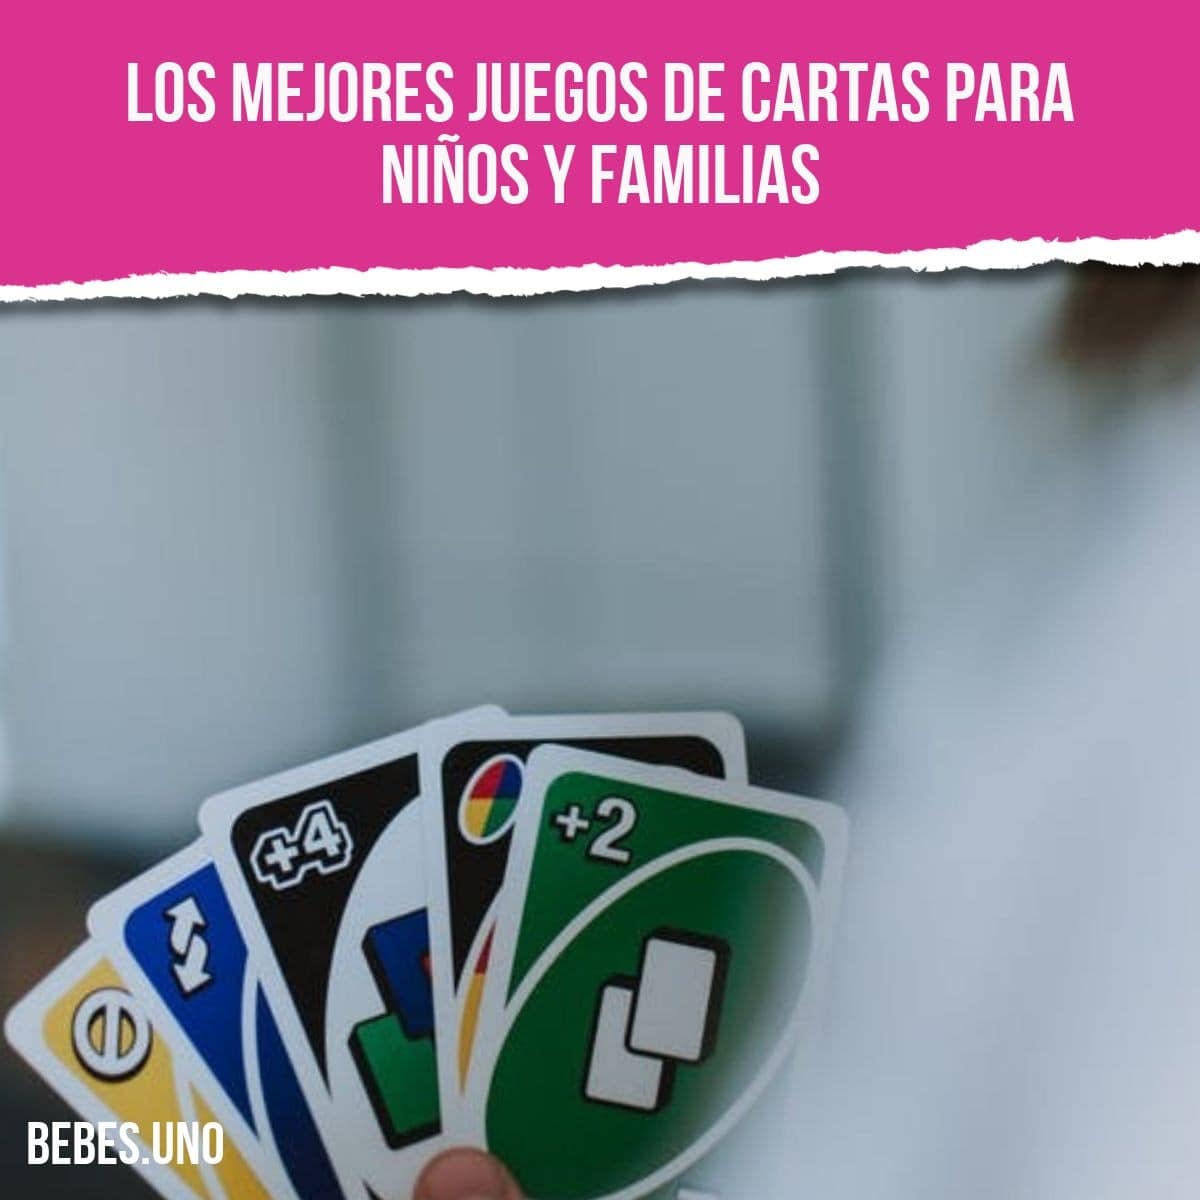 Los 10 mejores juegos de cartas para niños y familias